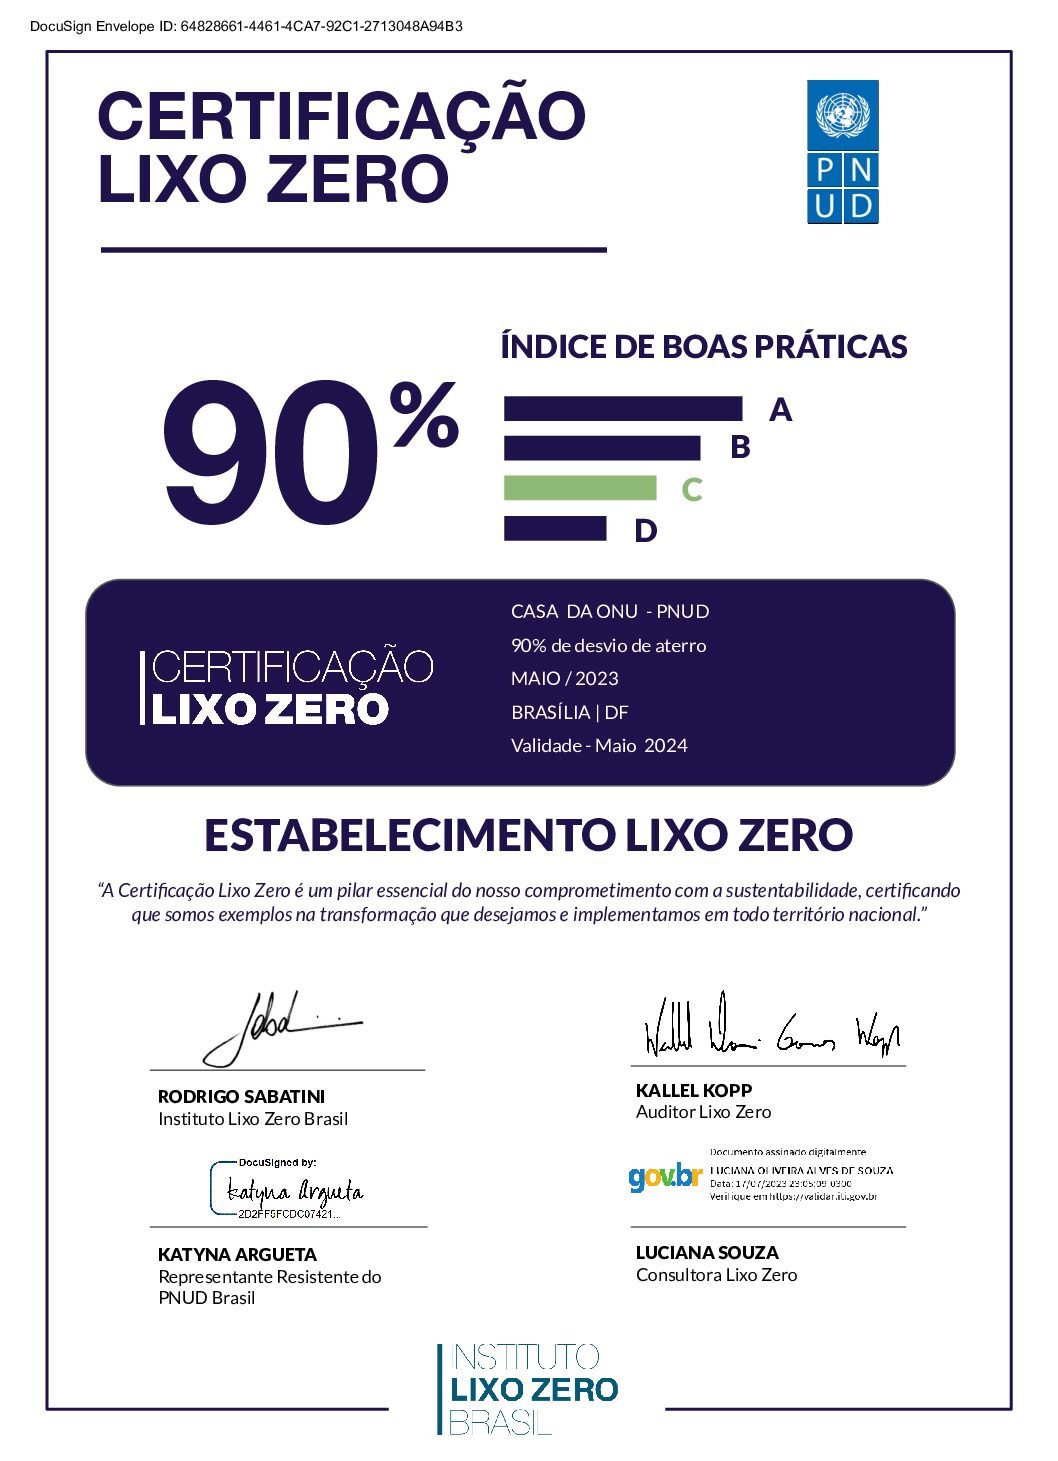 CertificacaoLixoZero_CasaONU_PNUD_DF_assinado (1)